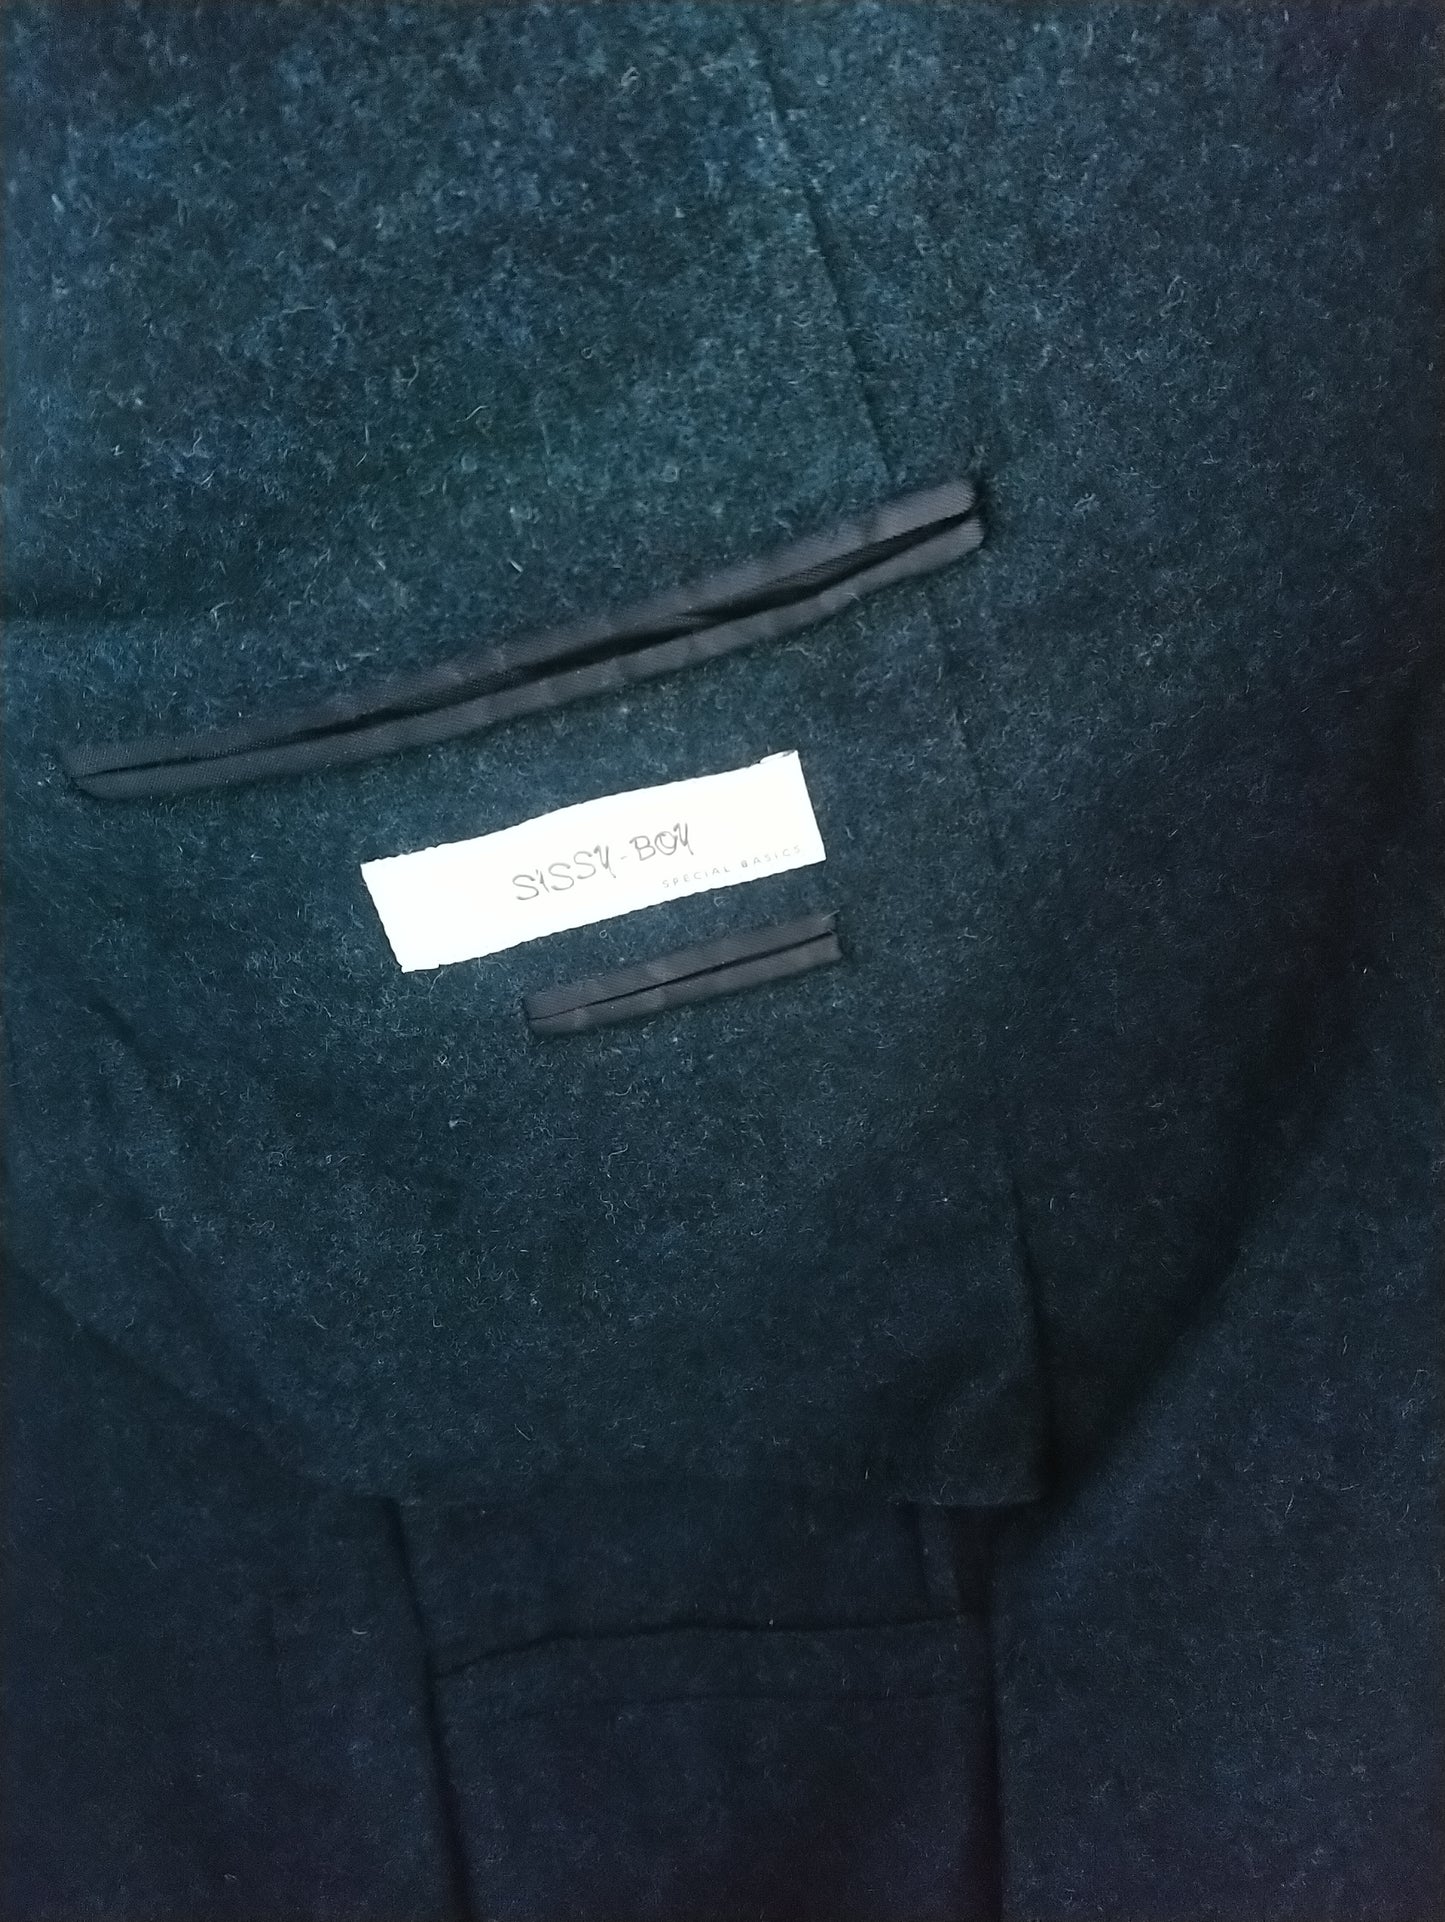 Giacca di lana da ragazzo femminuccia. Blu nero miscelato. Taglia XL.